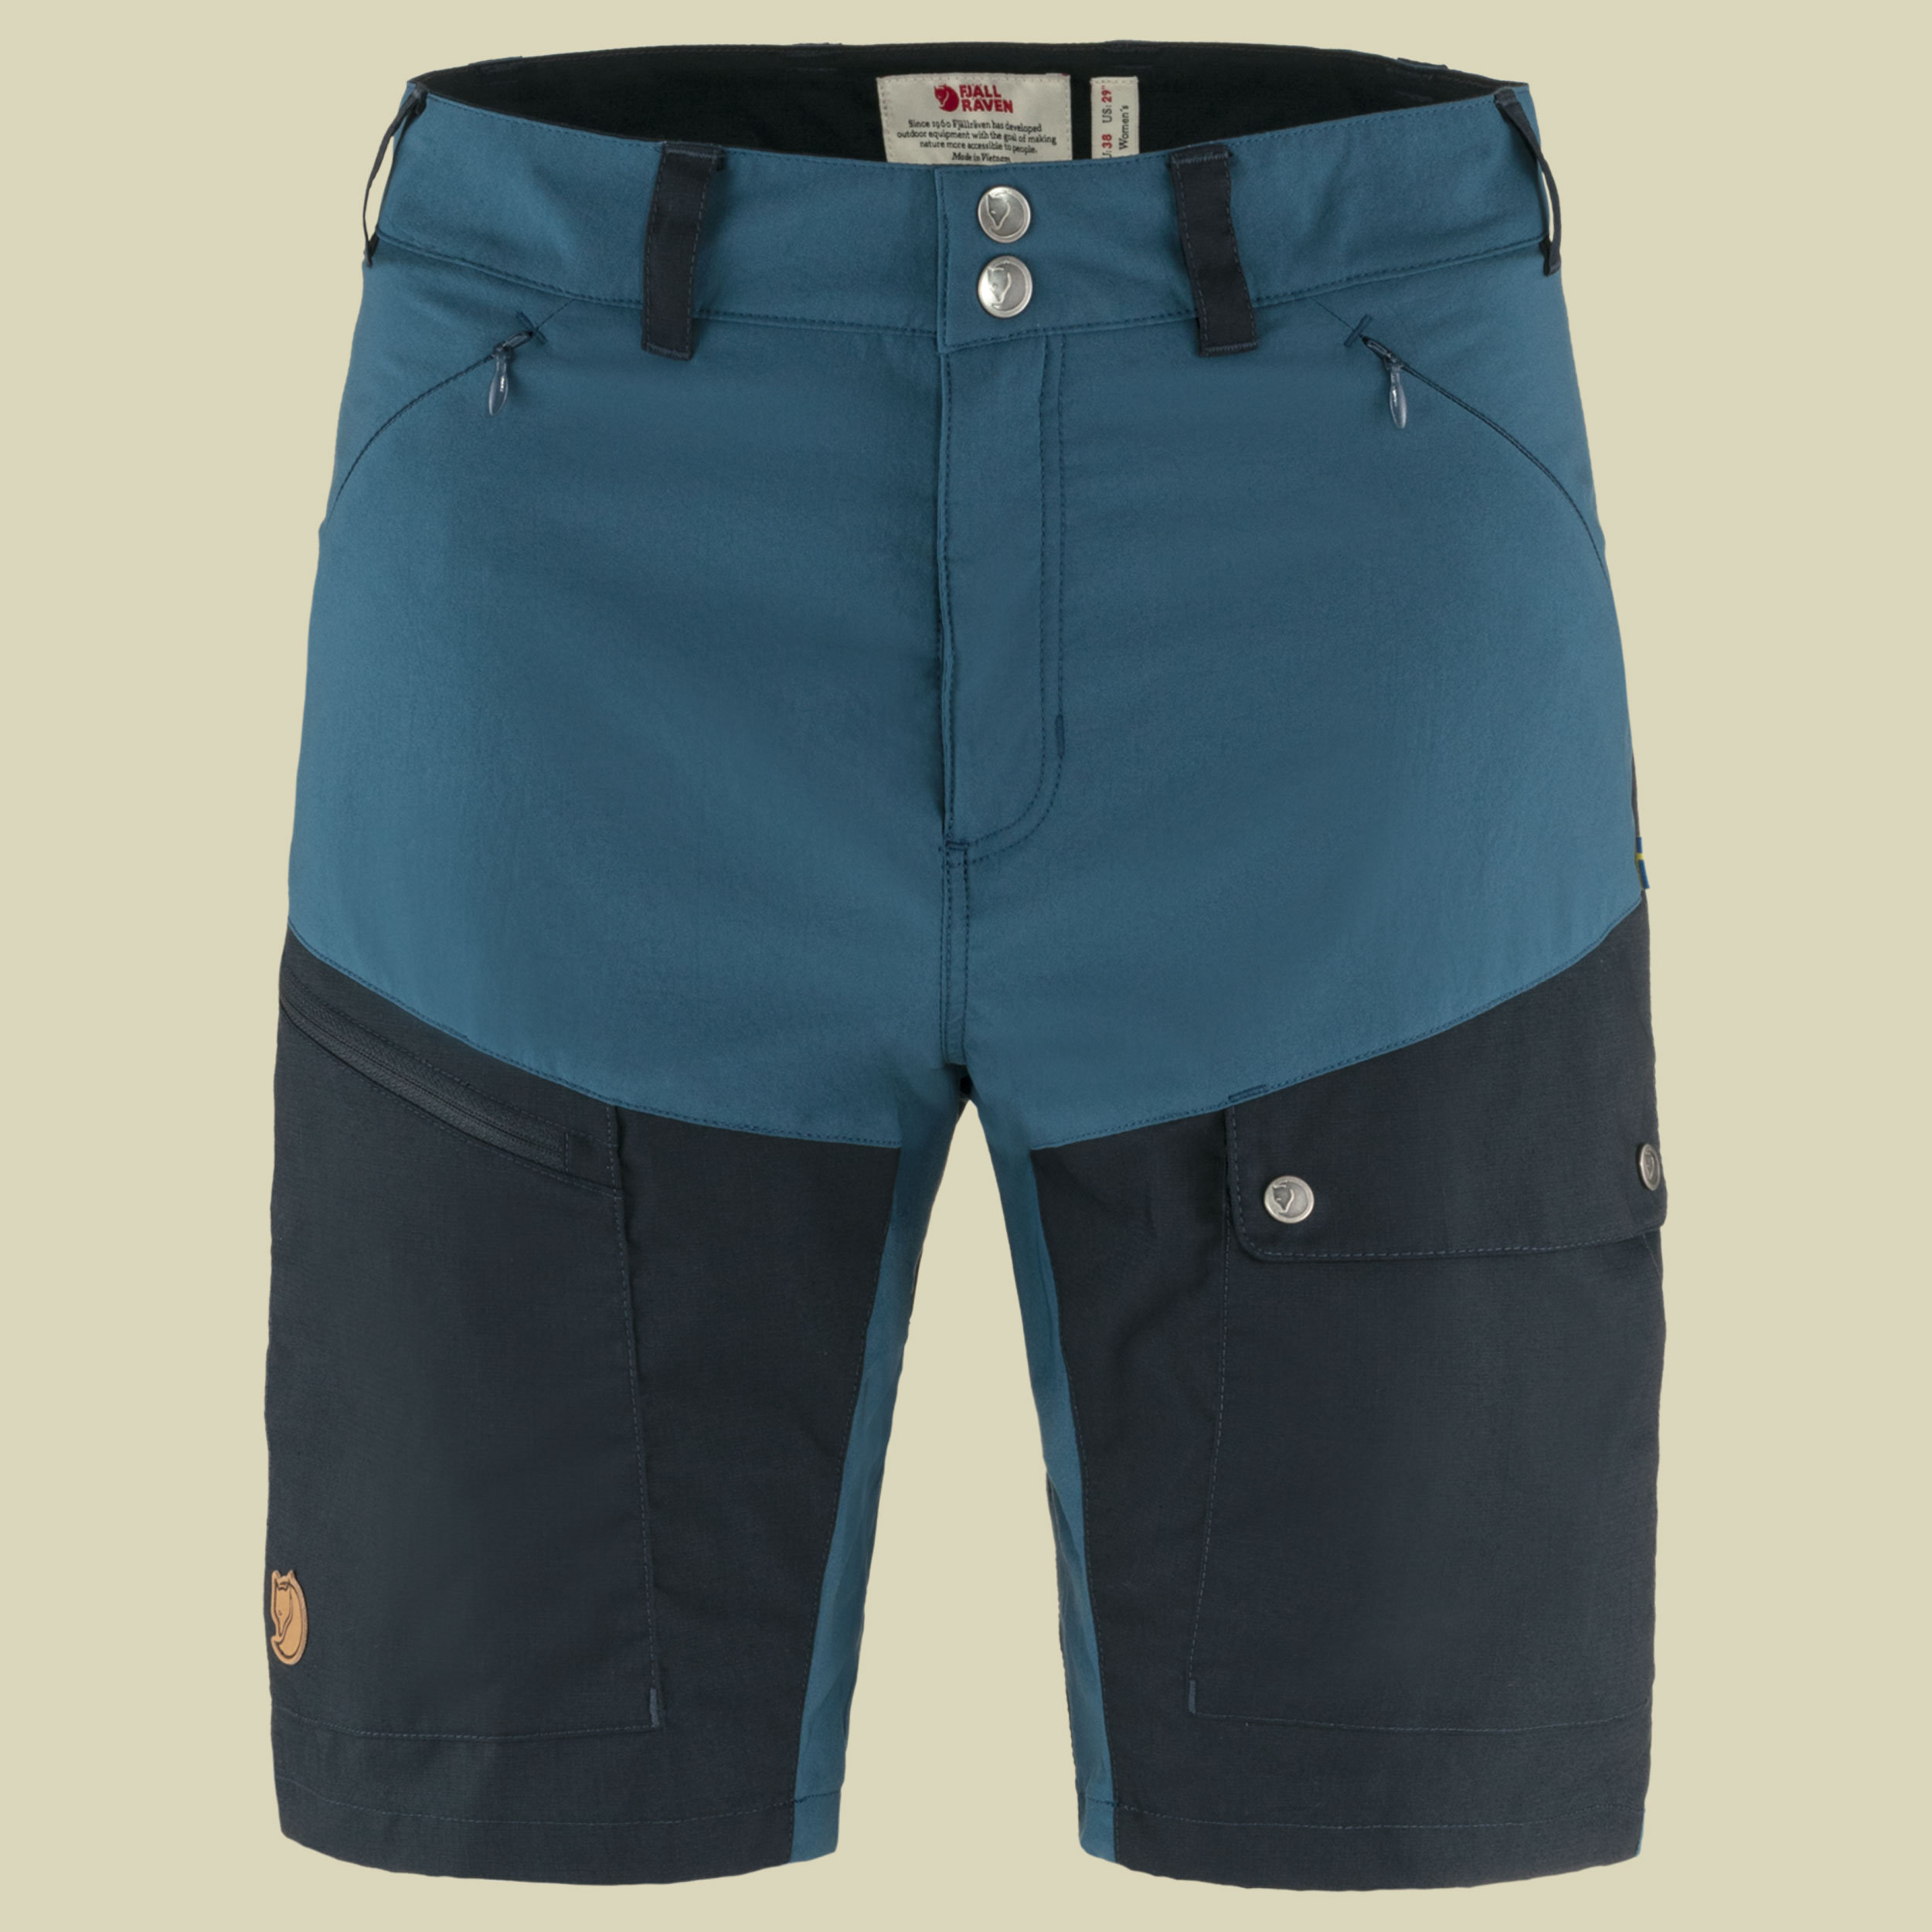 Abisko Midsummer Shorts Women Größe 40 Farbe indigo blue-dark navy